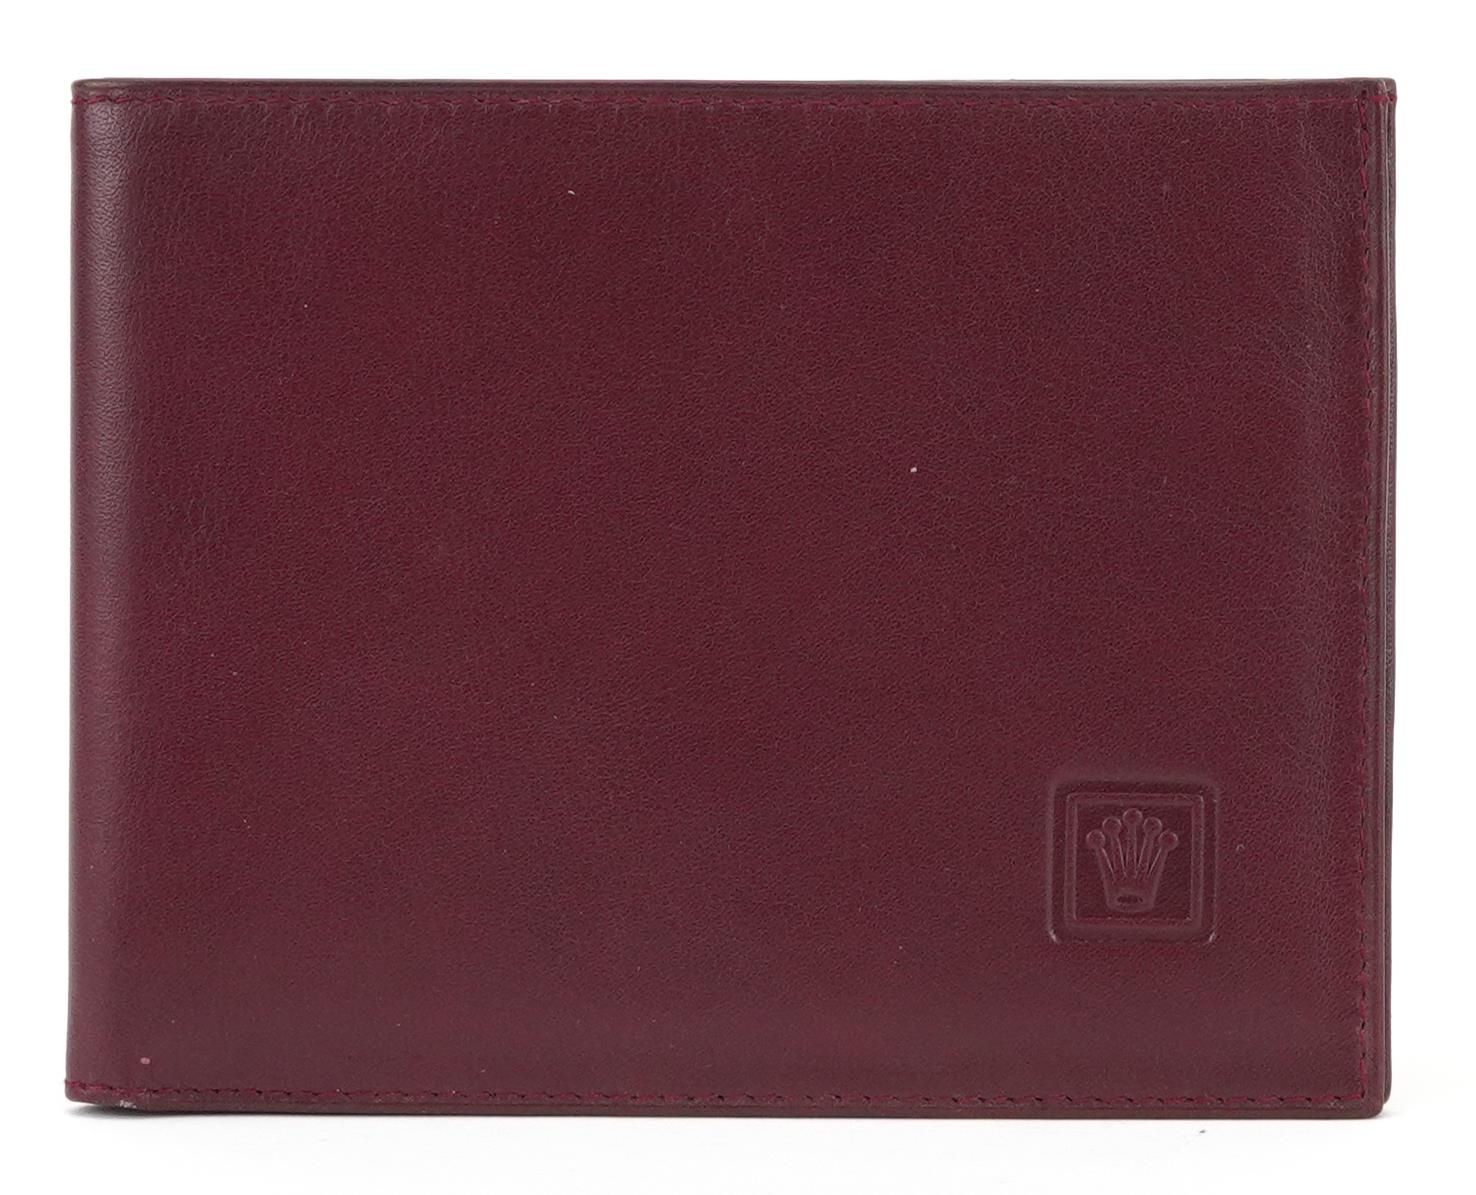 Gentlemen's Rolex red leather wallet - Image 2 of 4